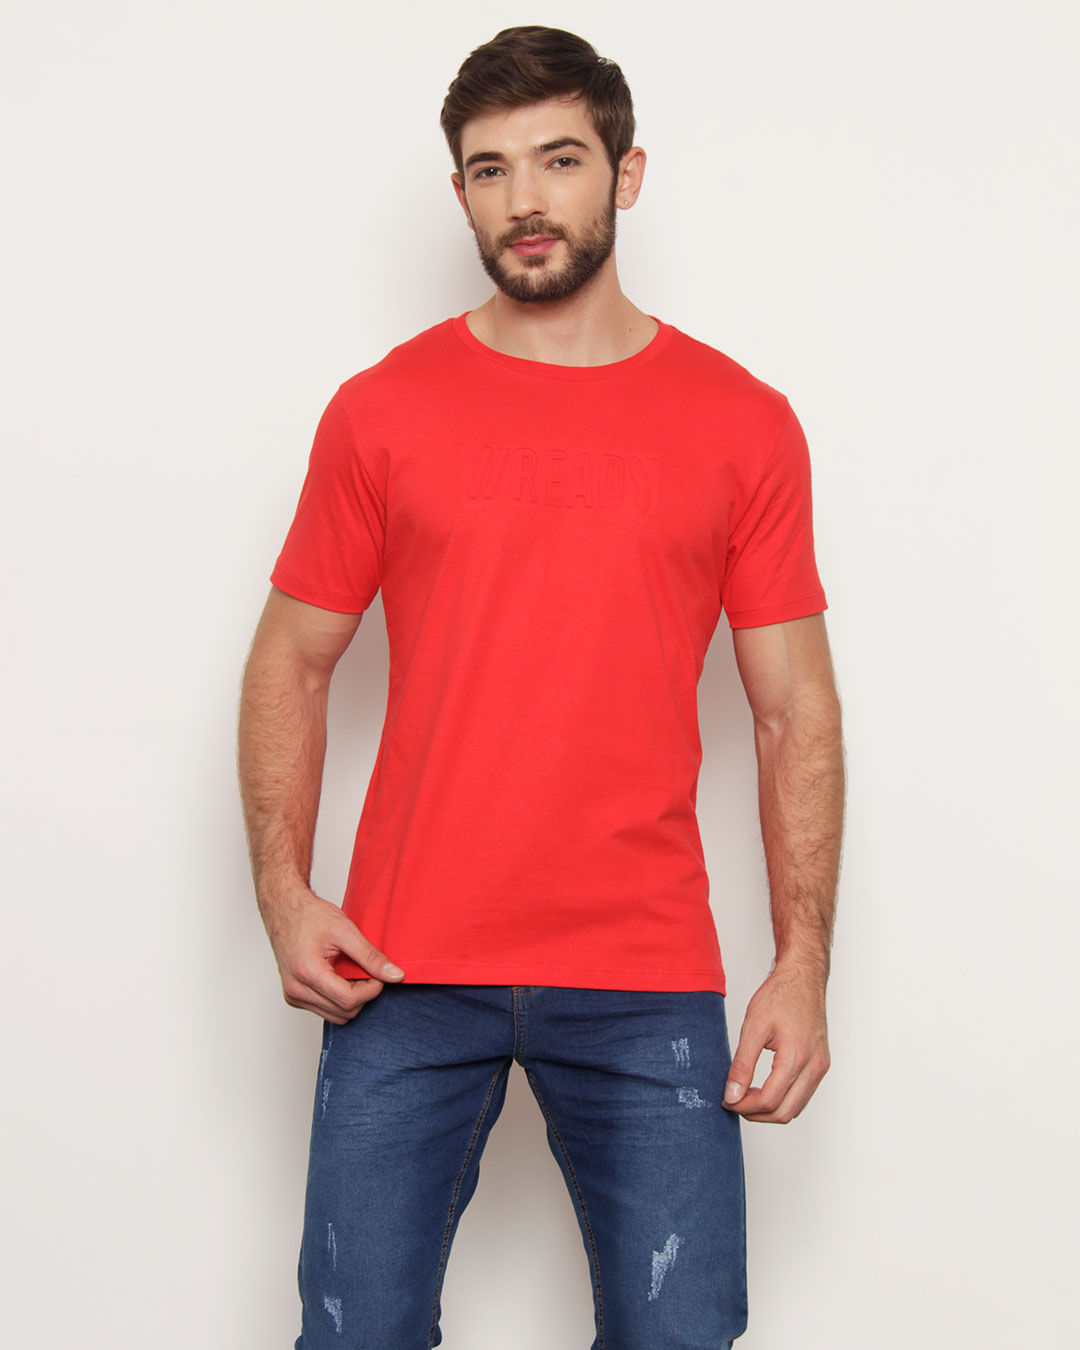 Camiseta-Tr189-Ready-Vermelho-Pgg---Vermelho-Medio